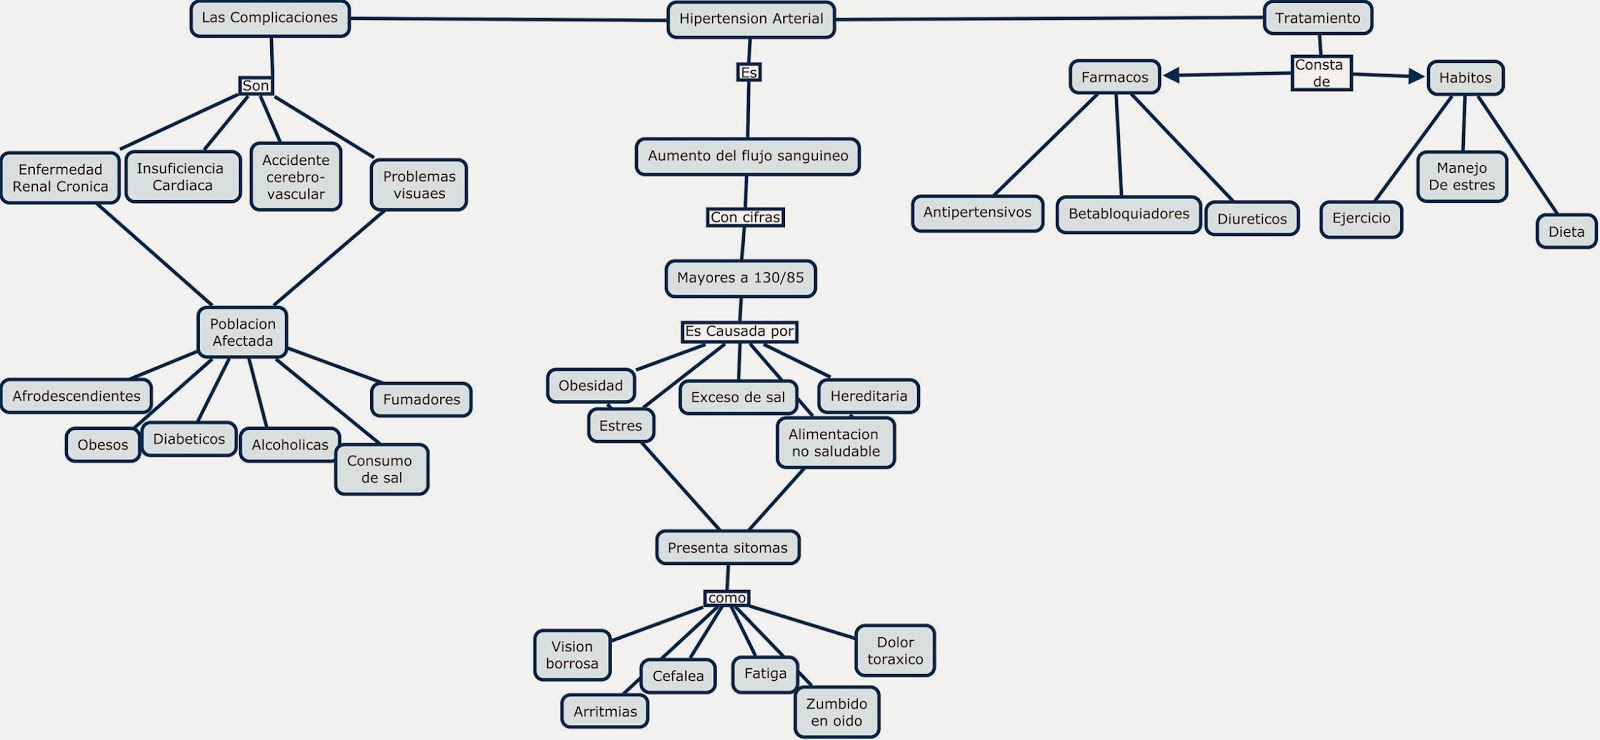 Hipertensión Arterial : Estructura del proceso de búsqueda ( Mapa  Conceptual y Mapa Mental